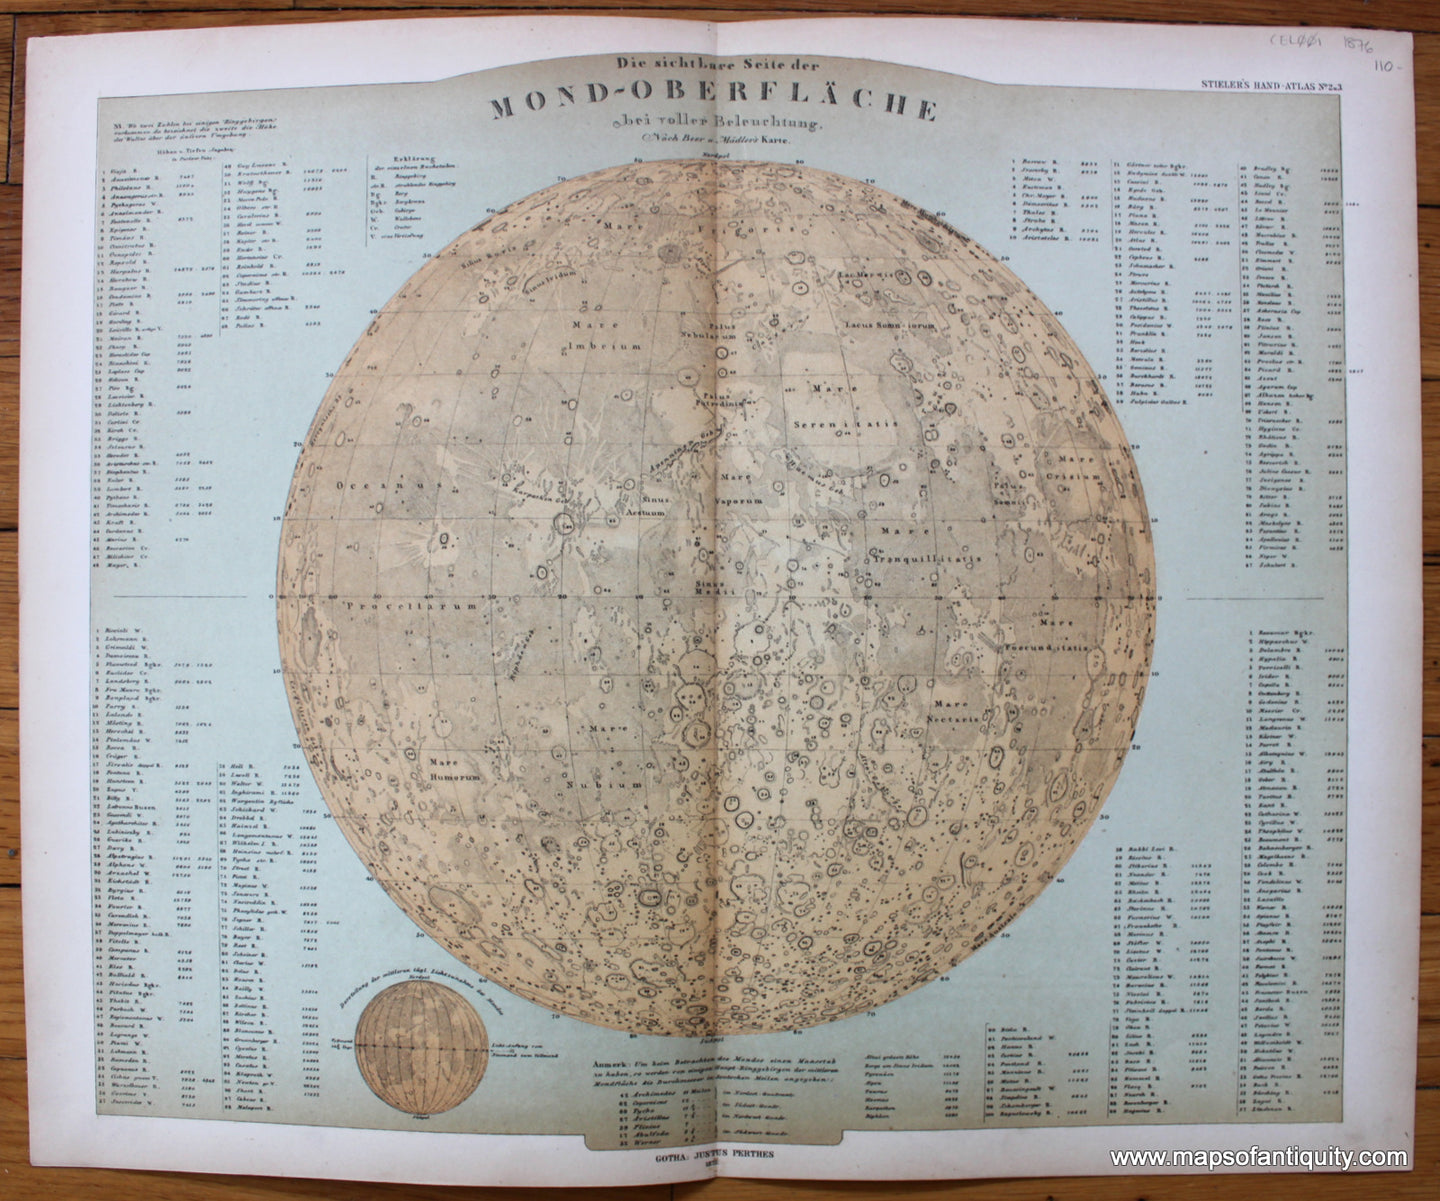 Antique-Map-Die-Sichtbare-Seite-der-Mond-Oberflache-bei-voller-Beleuchtung-Moon-Craters-Stieler-1876-1870s-1800s-19th-century-Maps-of-Antiquity